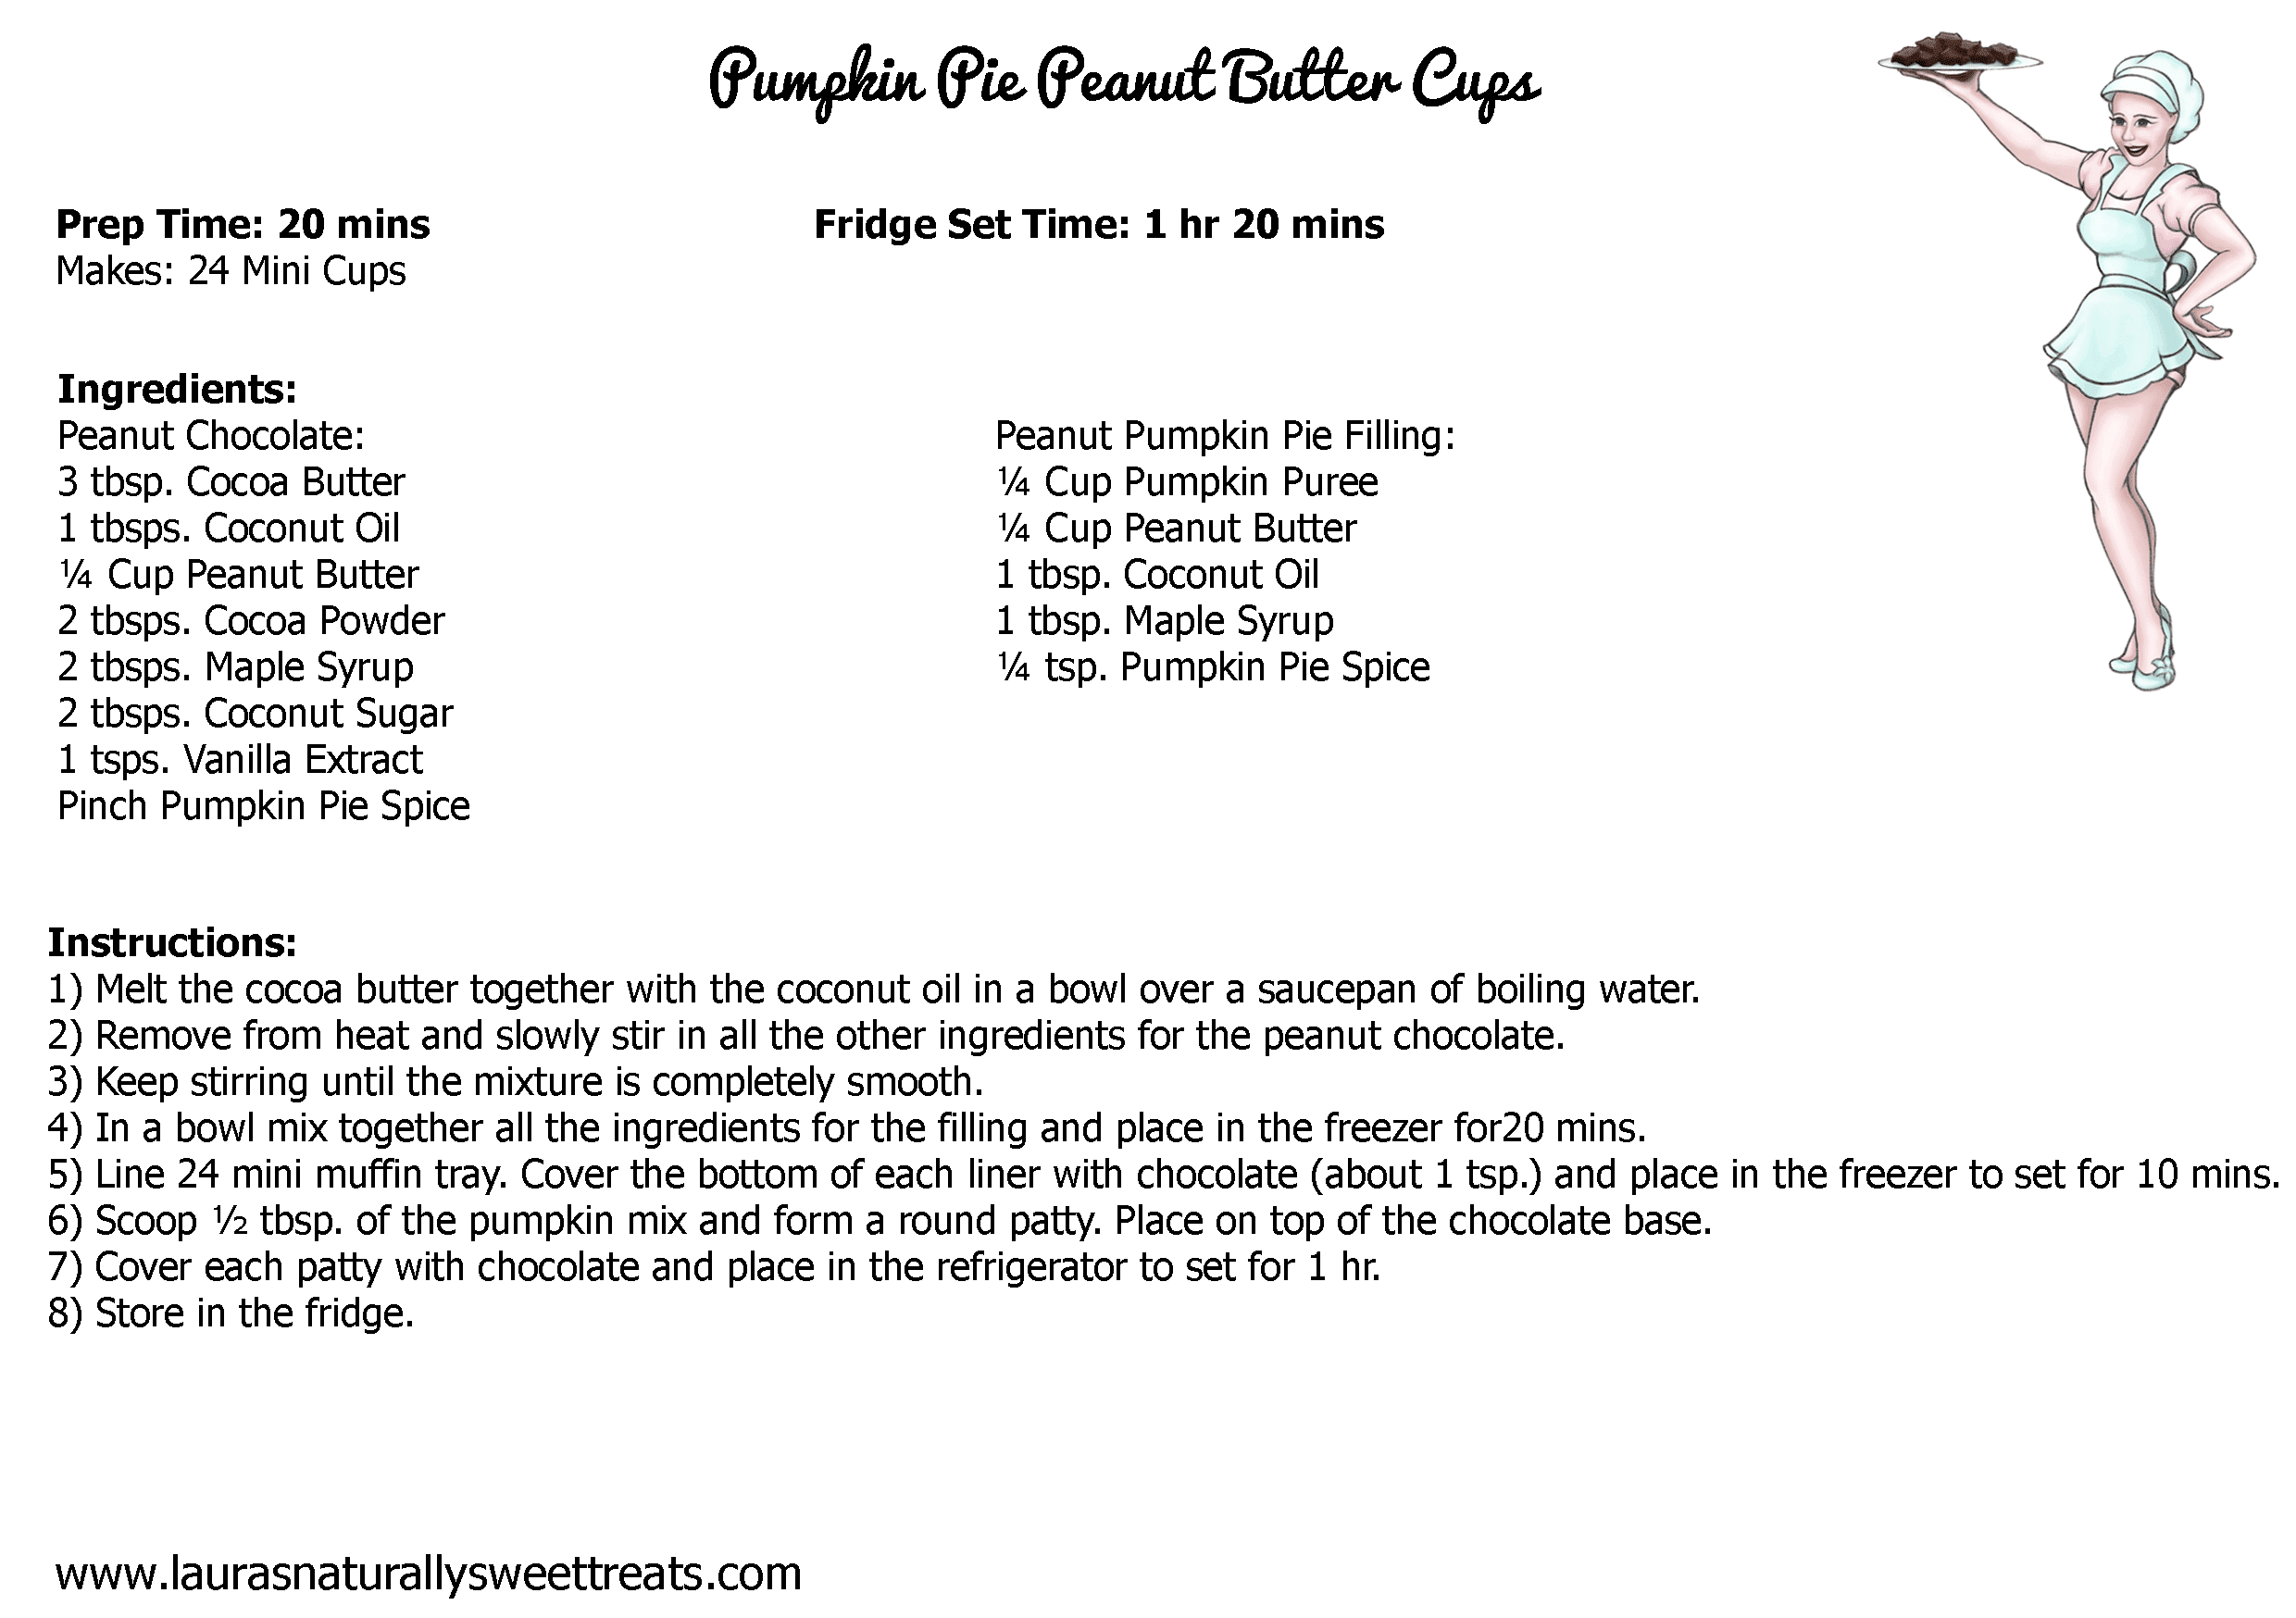 pumpkin-pie-peanut-butter-cups-recipe-card